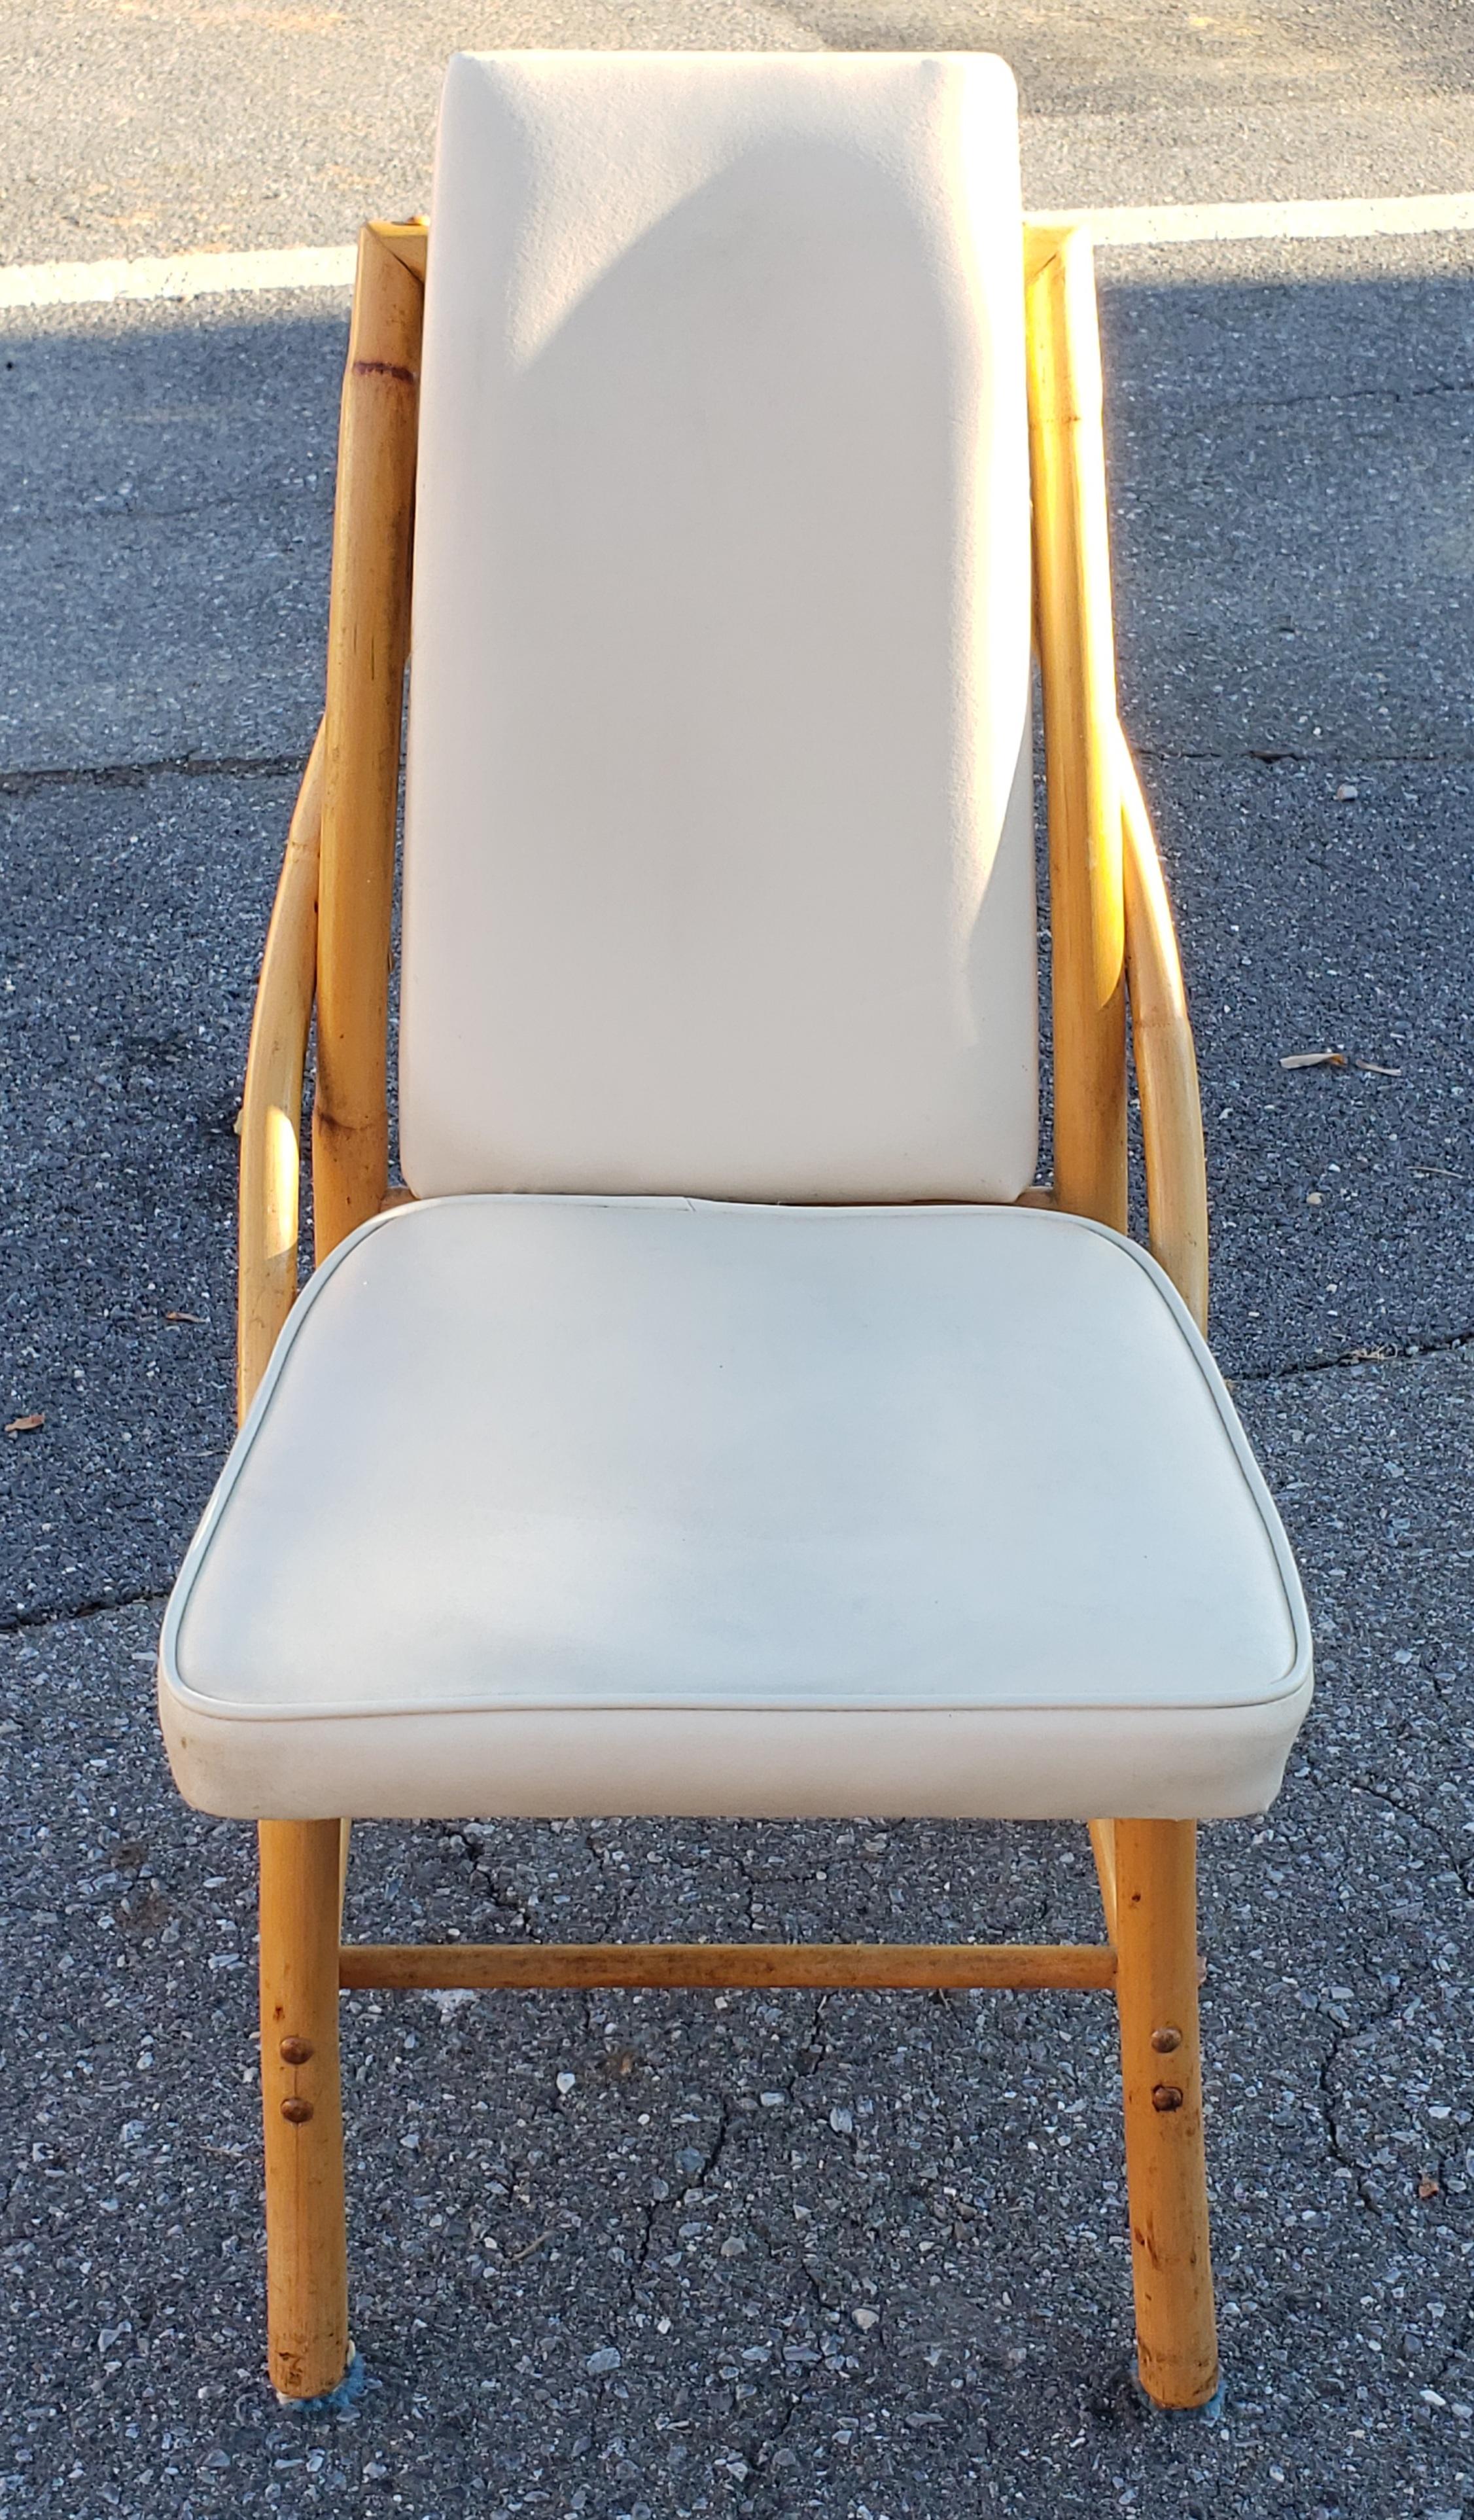 Diese Auflistung ist für eine Reihe von 6 sehr einzigartig Esszimmerstühle.  Gestell aus geschwungenem Rattan. Sitze und Rückenlehnen aus elfenbeinfarbenem Vinyl. Hergestellt von Bam-Tan Lantana, Florida USA. Ungefähr 60er Jahre.

Größe in Zoll: